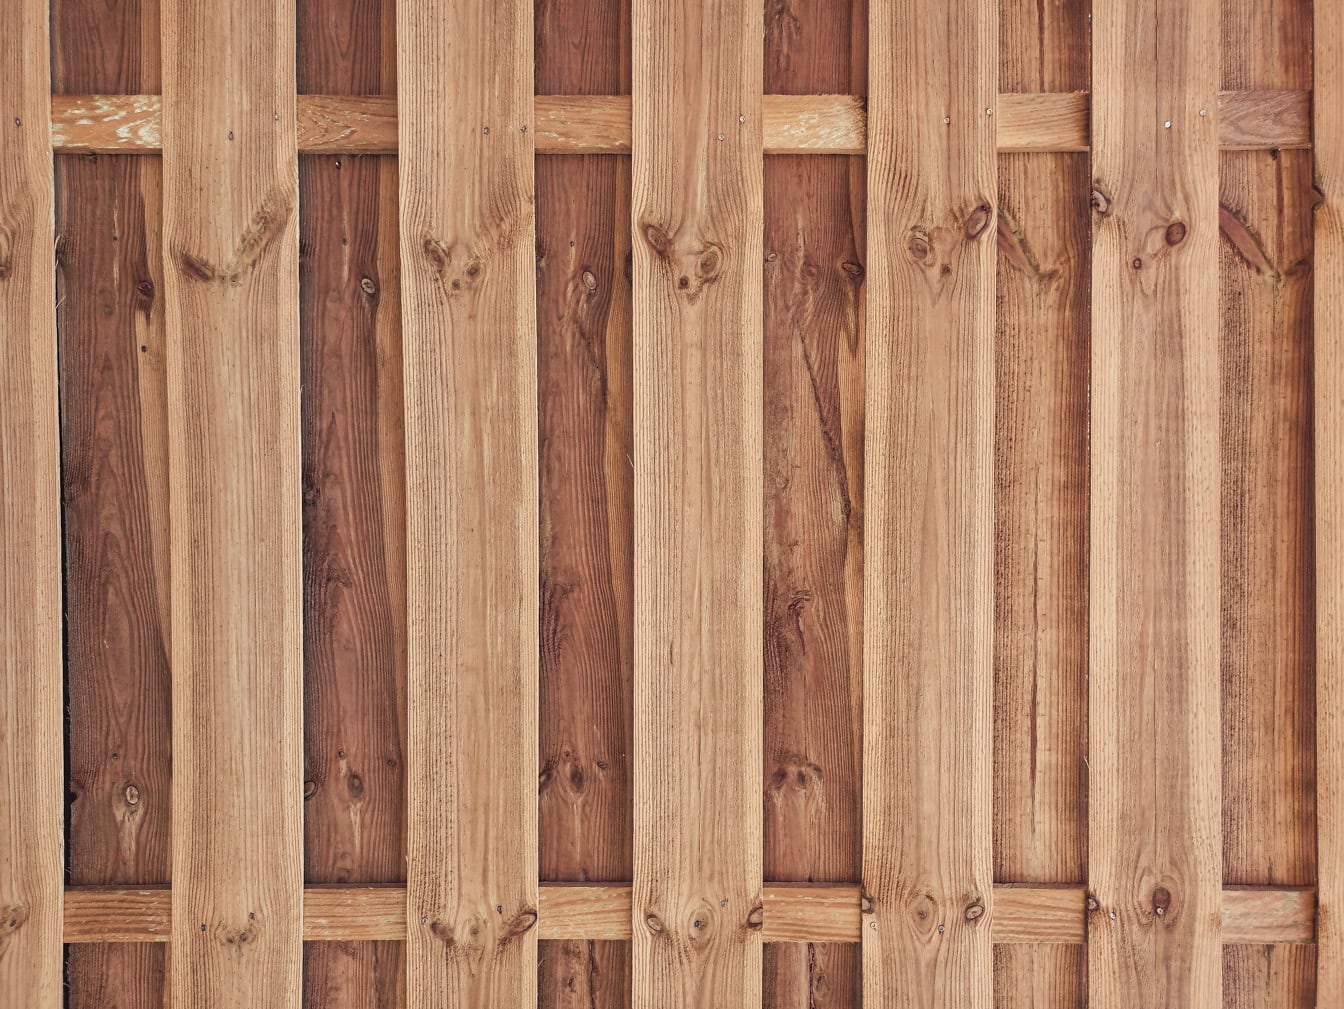 Un panneau de bois fait de lattes de bois dur empilées verticalement en forme de palissade avec un fond fait de planches avec des nœuds